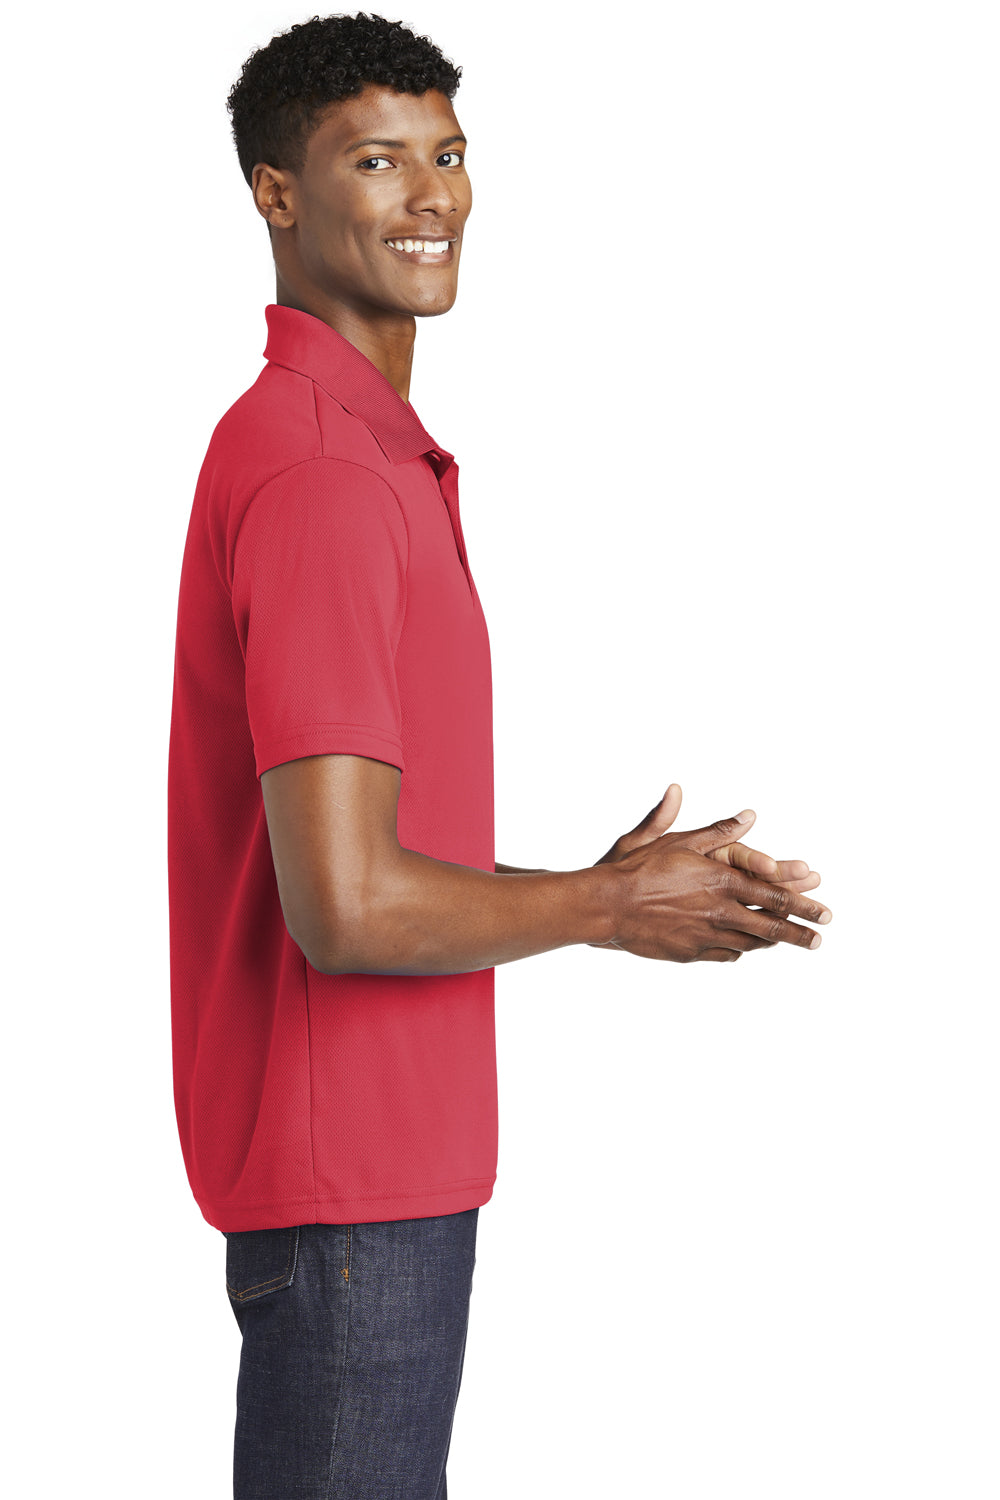 Sport-Tek ST640 Mens RacerMesh Moisture Wicking Short Sleeve Polo Shirt Red Side